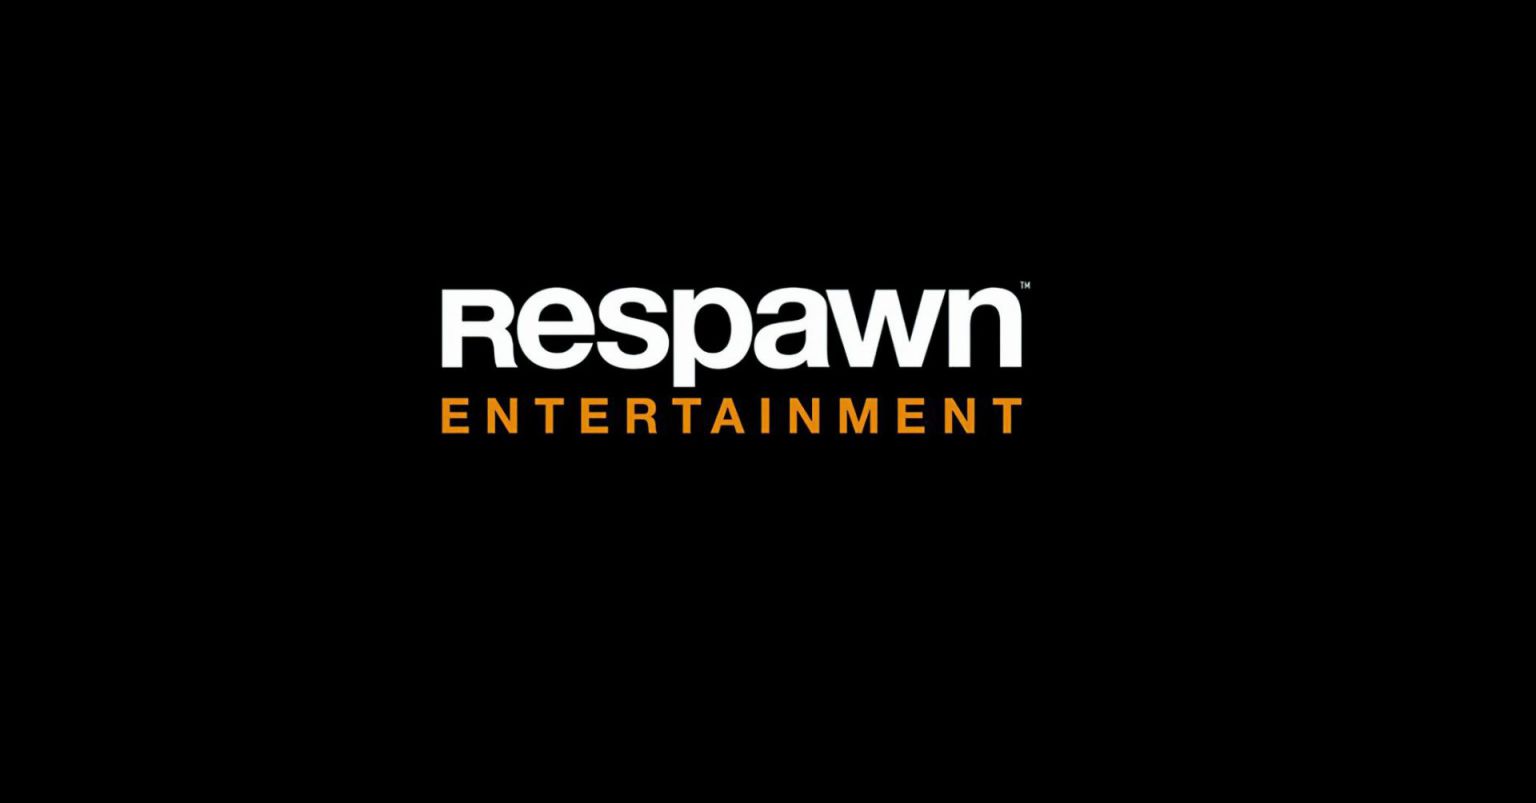 Respawn confirma que su nuevo desarrollo será un FPS para un jugador, que heredaría conceptos como la movilidad que caracteriza a Titanfall.